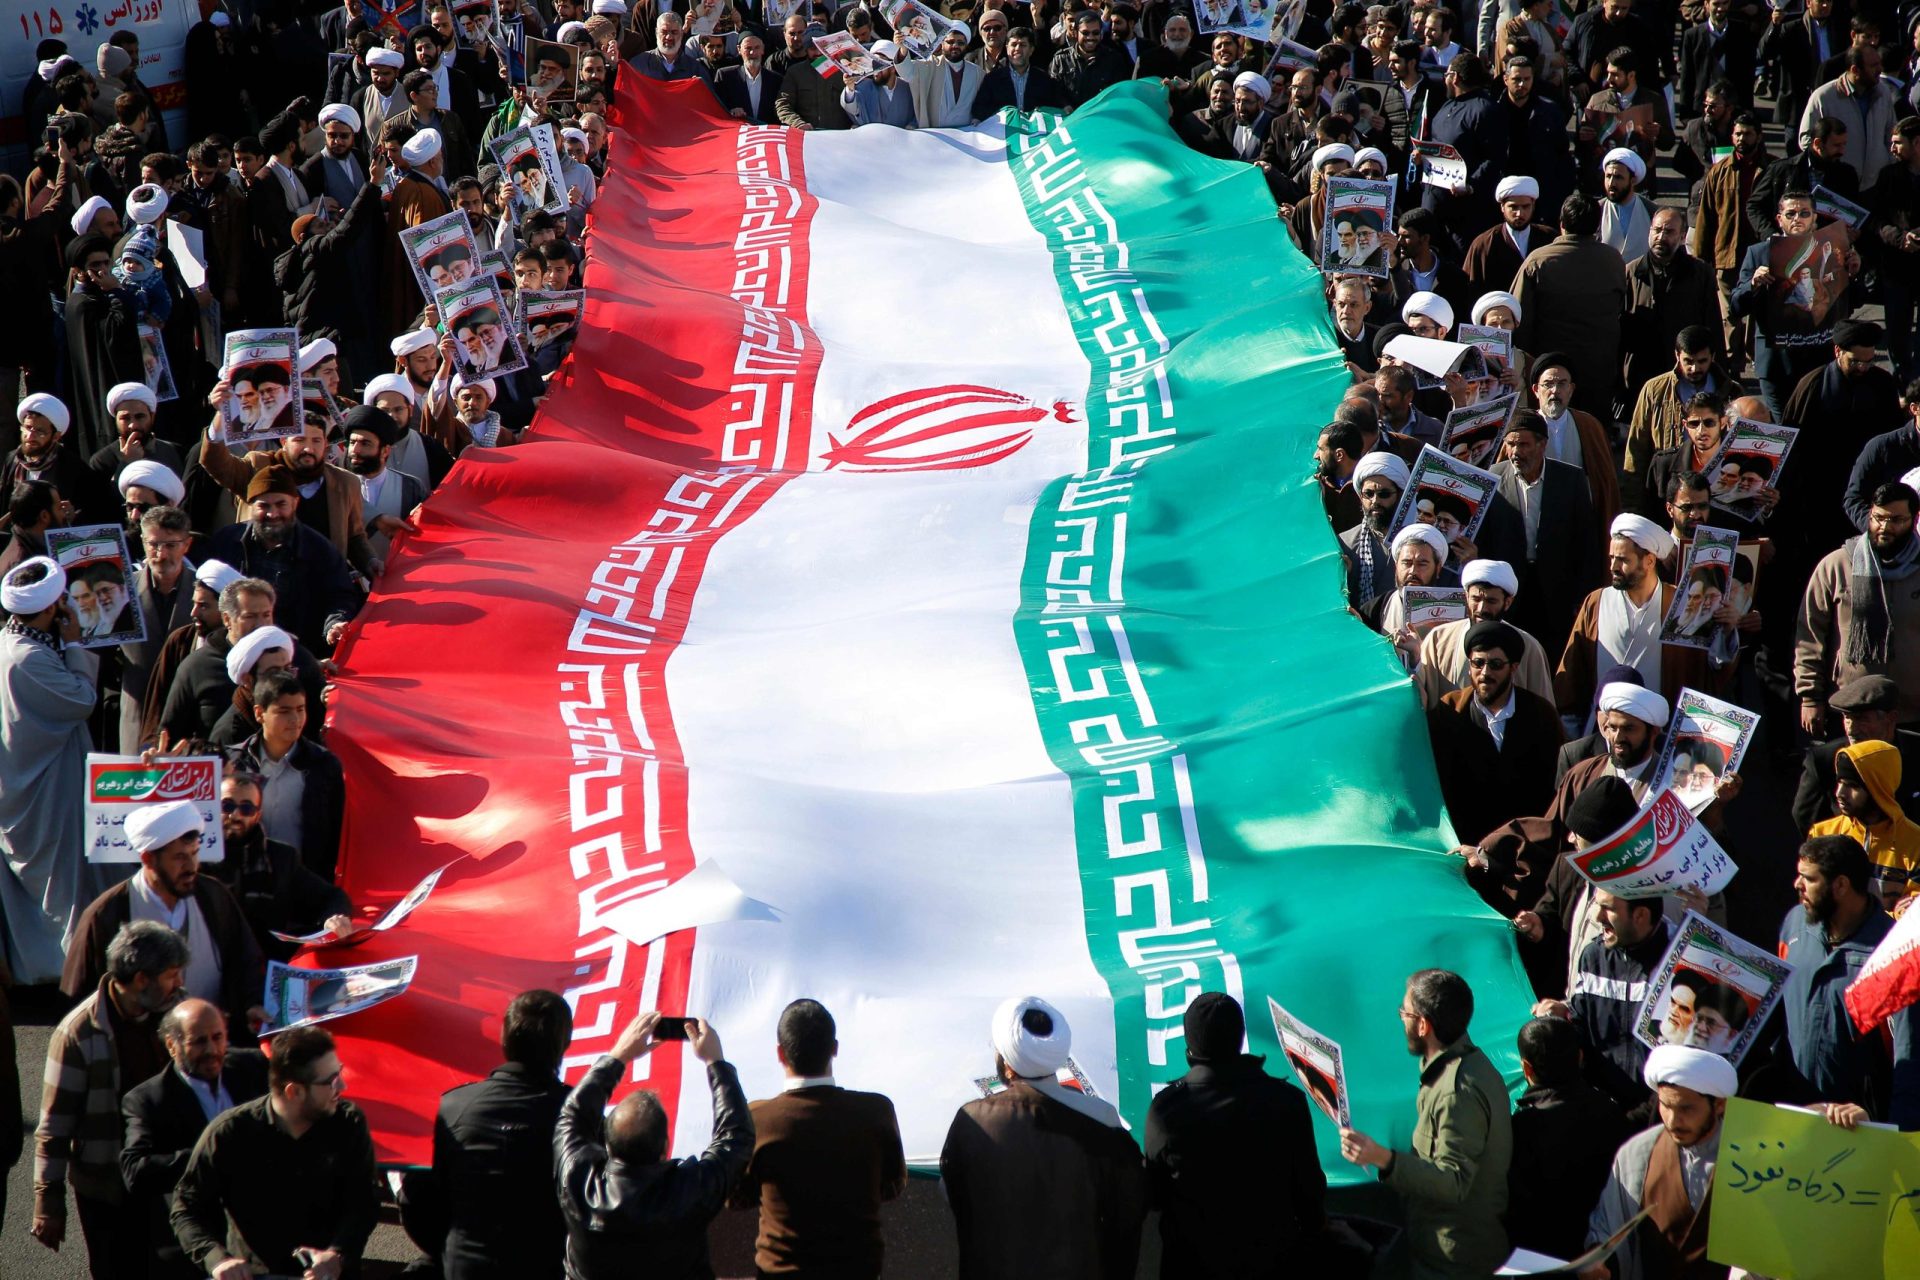 Turquia. “Somos contra intervenções estrangeiras no Irão”